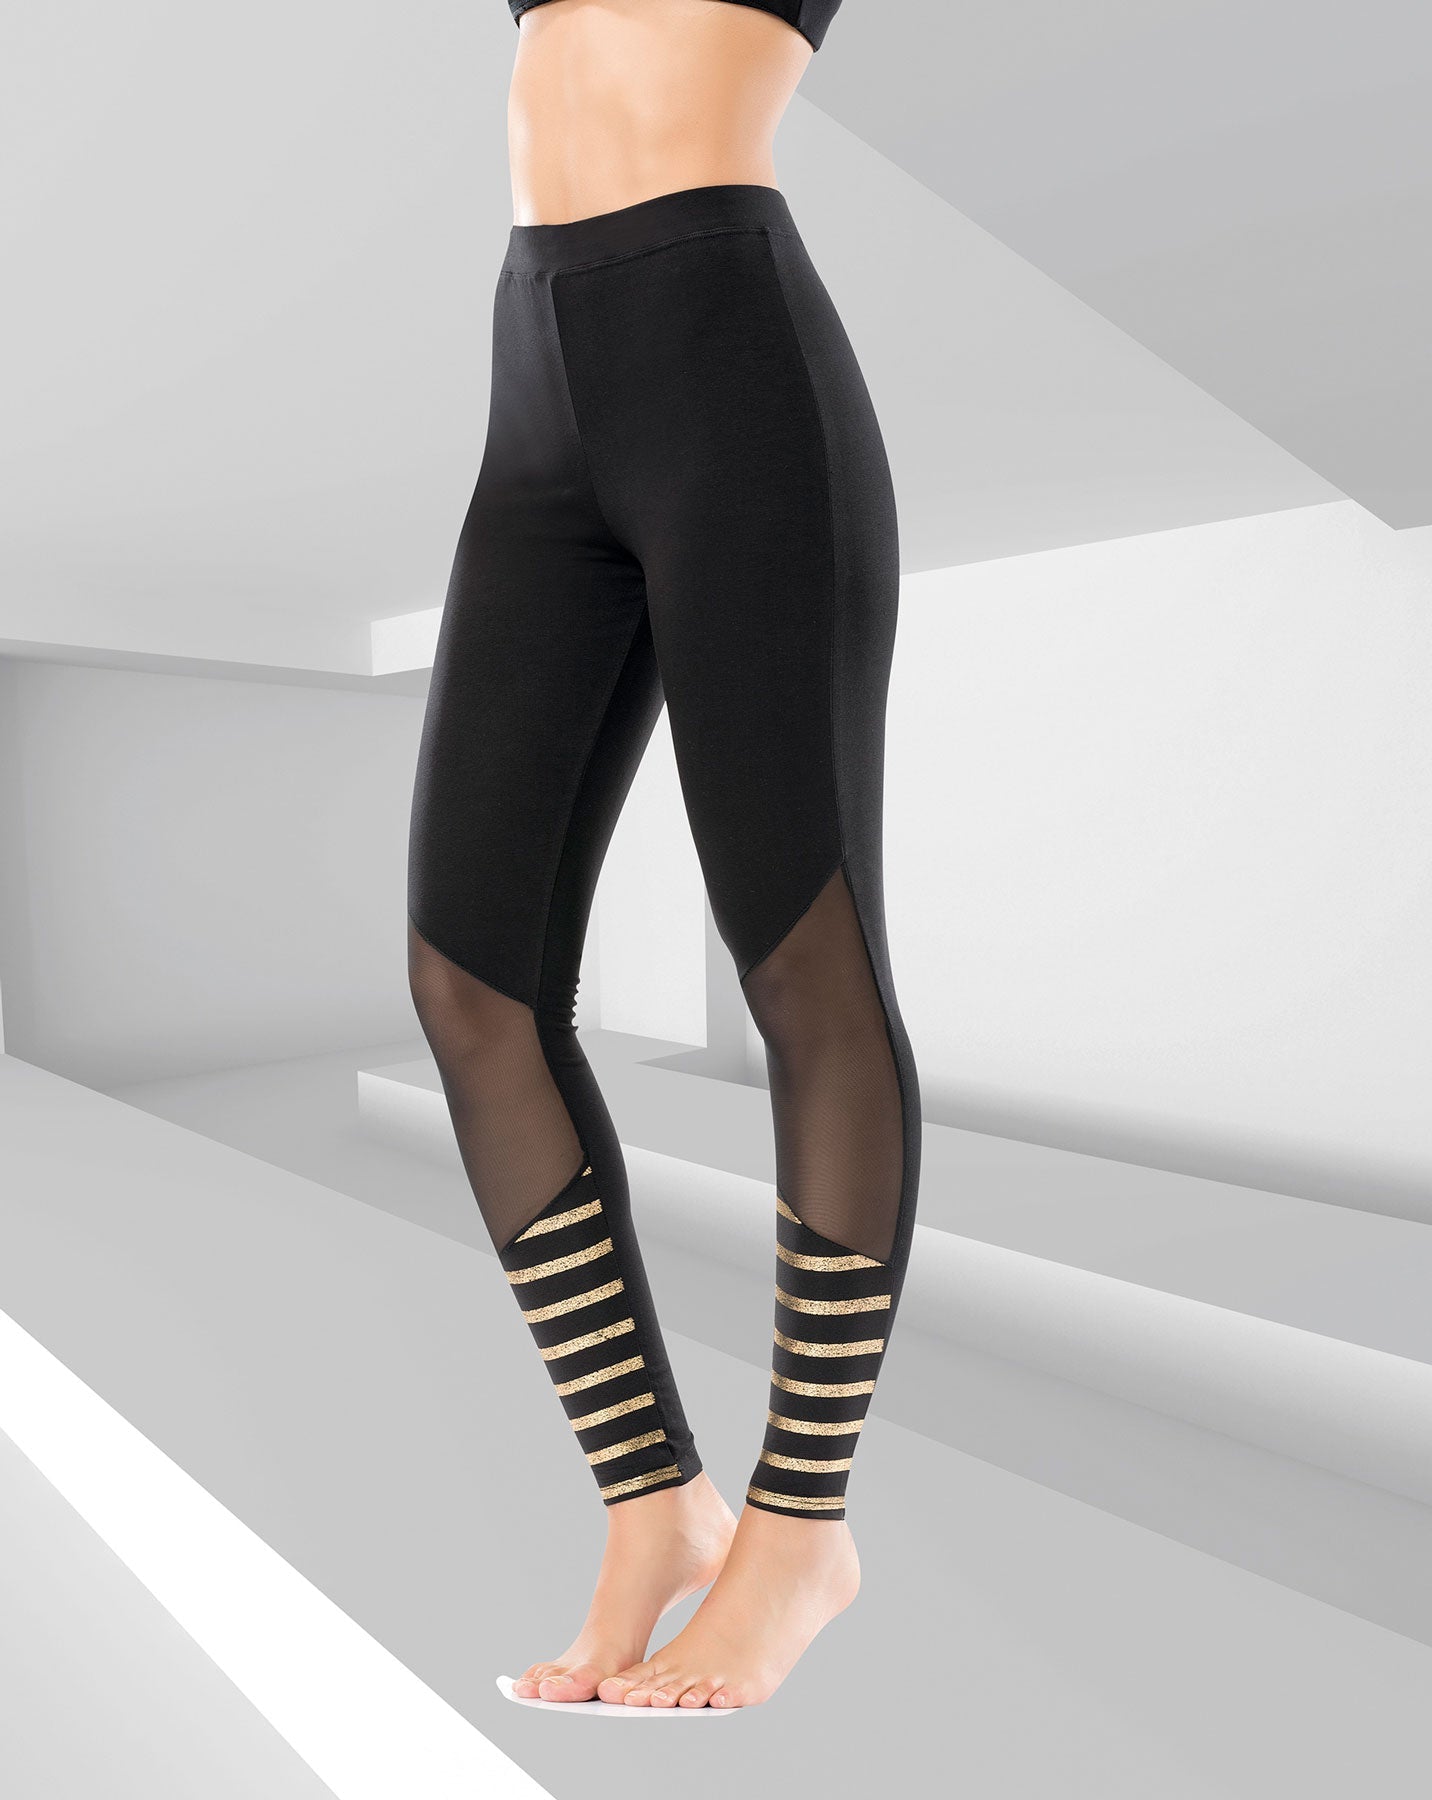 Model Women's Leggings 0557